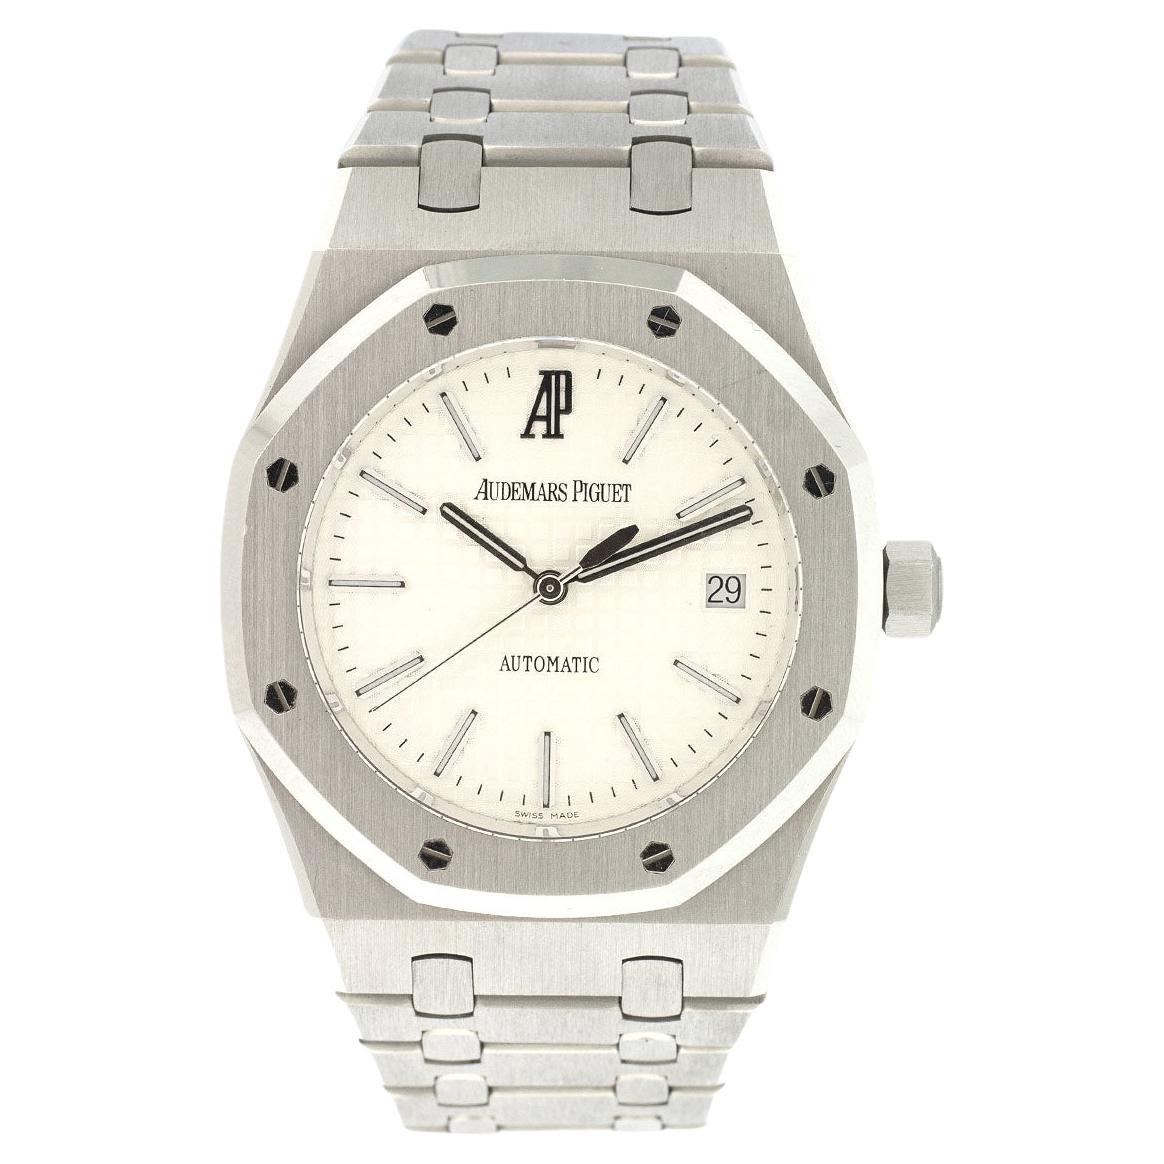 Audemars Piguet 15300 Royal Oak Uhr mit weißem Zifferblatt